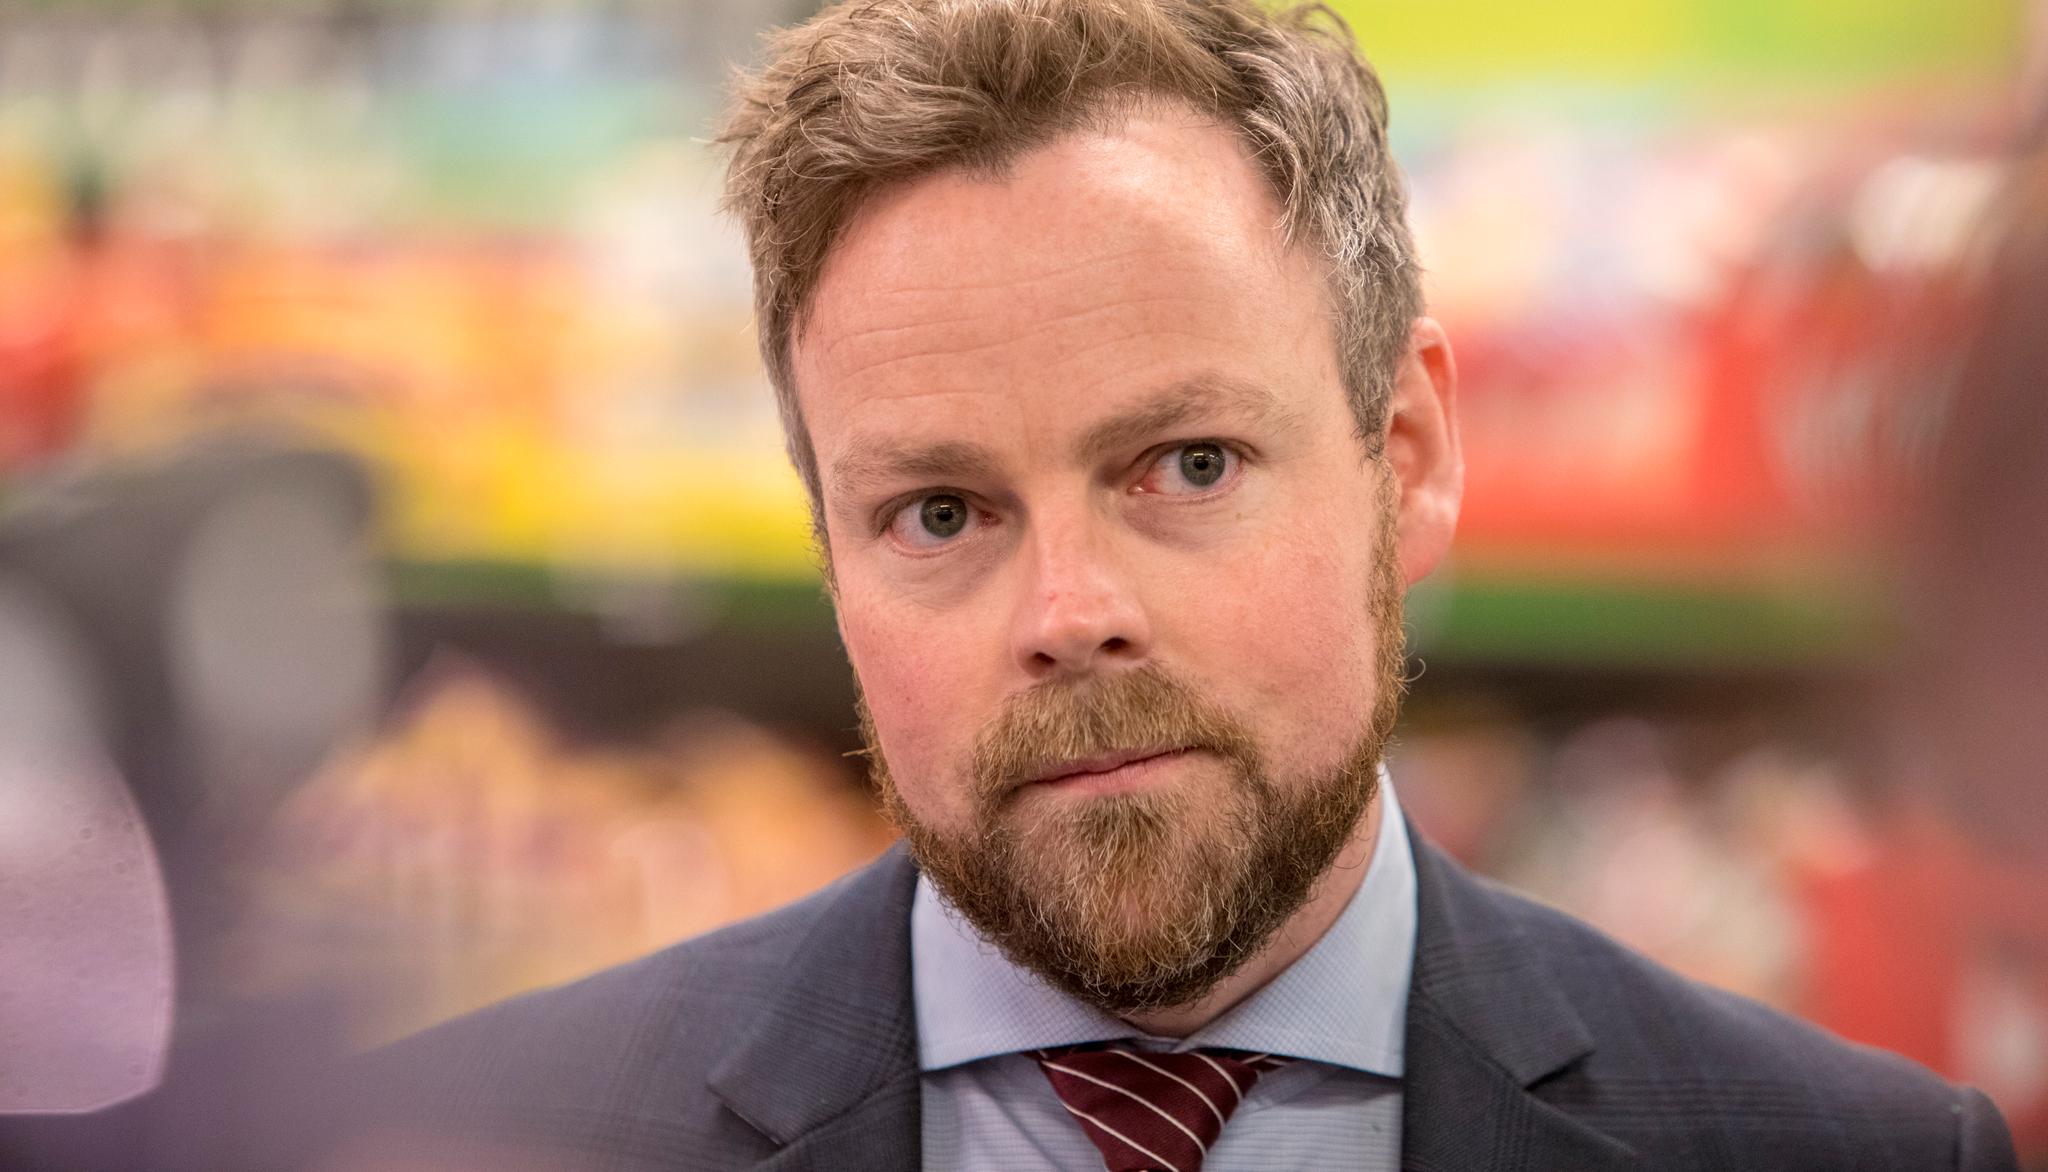 Næringsminister Torbjørn Røe Isaksen (H) er kritisk til retorikken i klimaopprop.